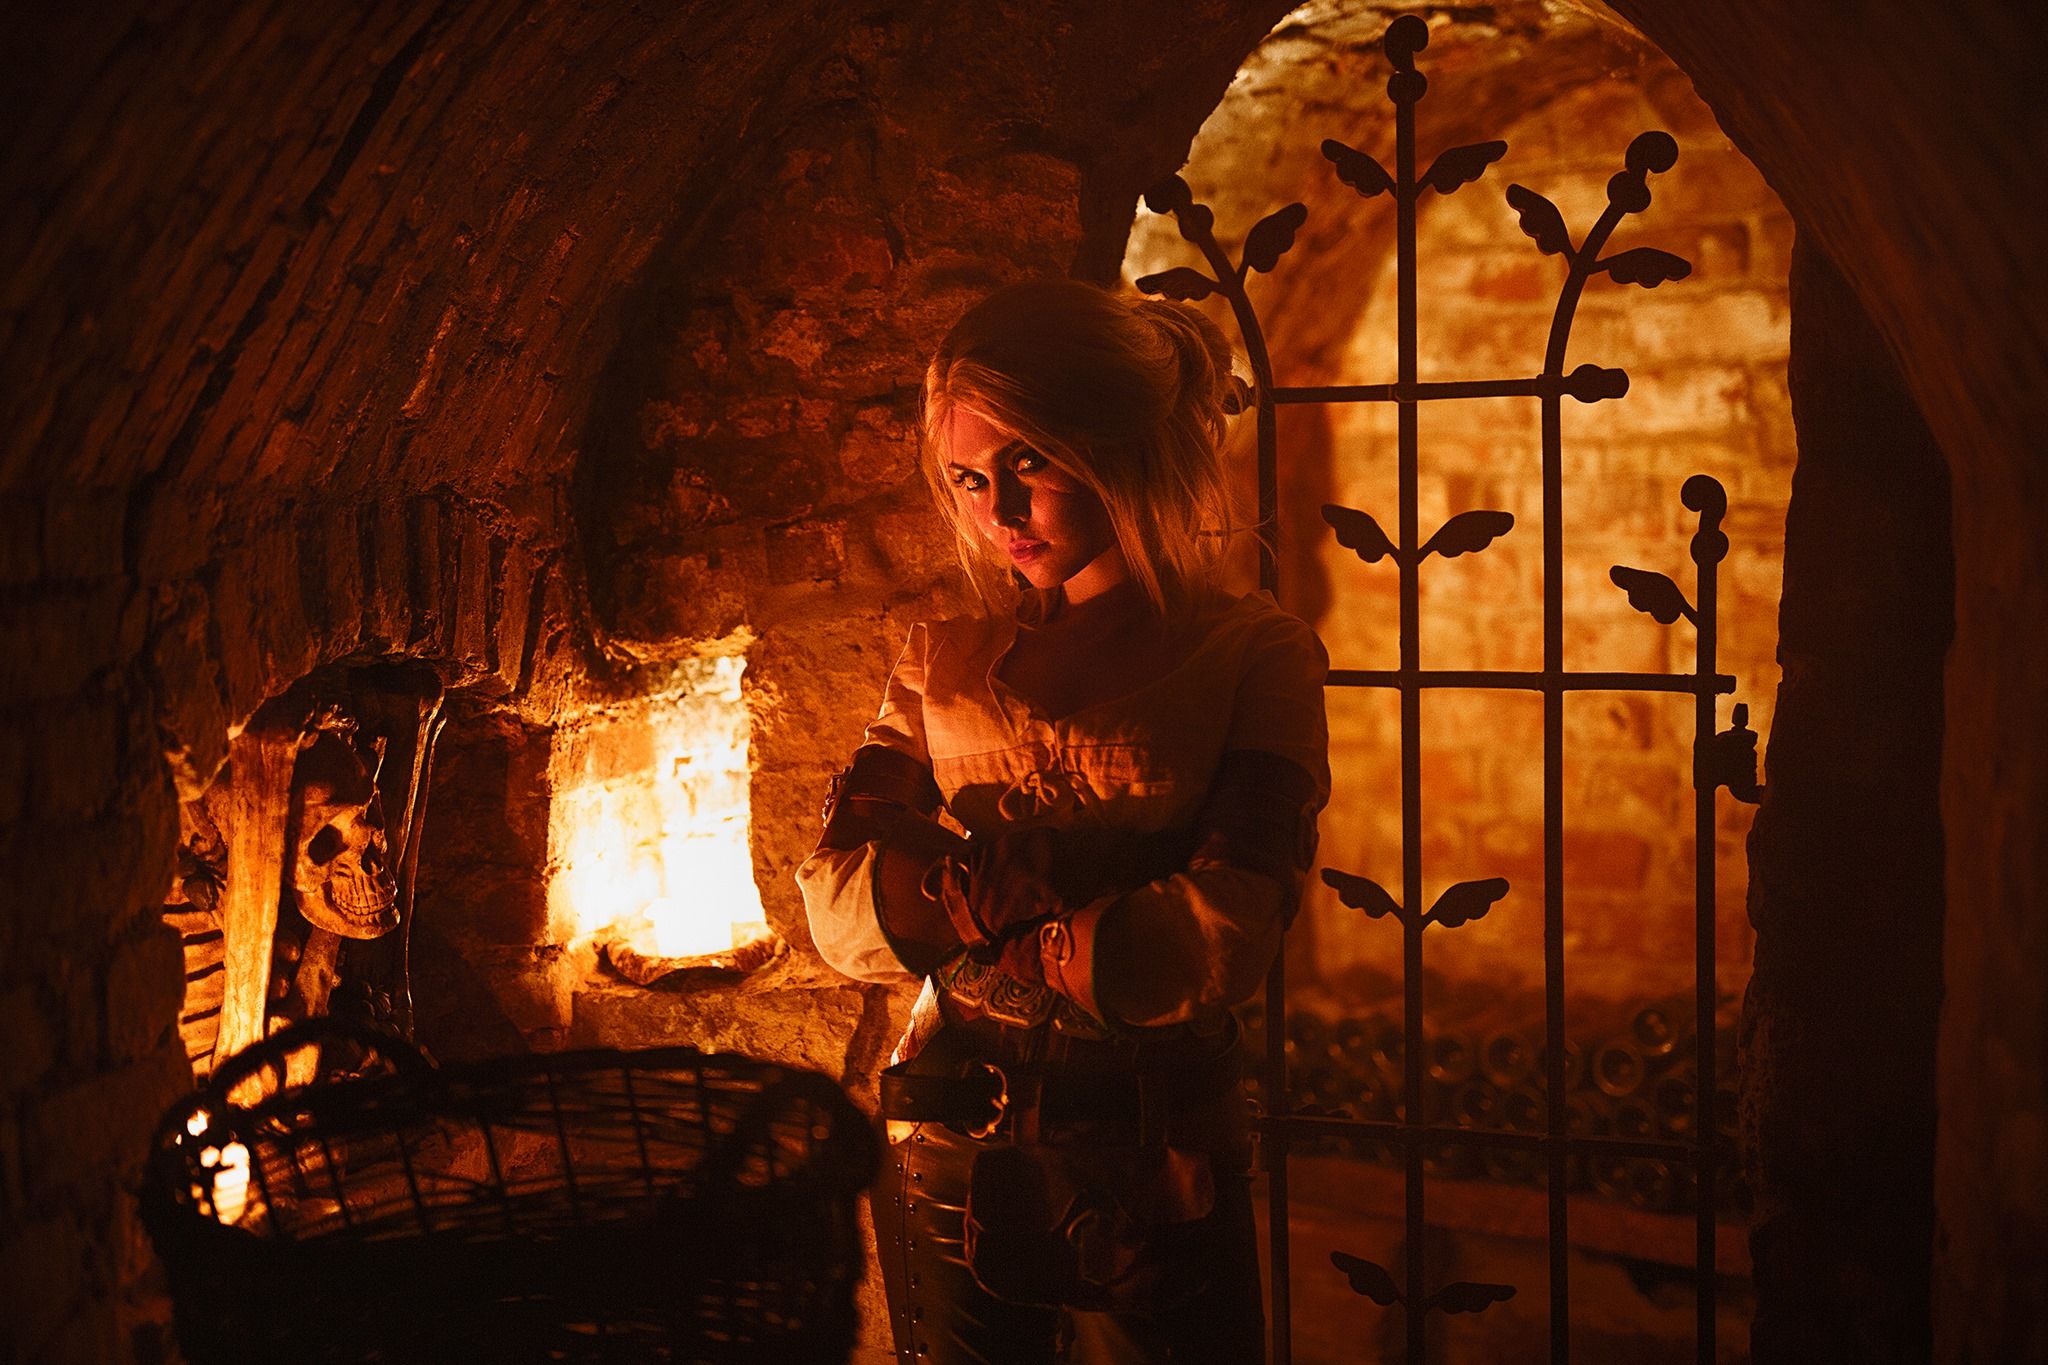 Косплей на Цири из The Witcher 3: Wild Hunt. Косплеер: Илона Бугаева. Фотограф: Eugene Art. Photograph. Источник: https://twitter.com/IlonaBugaeva